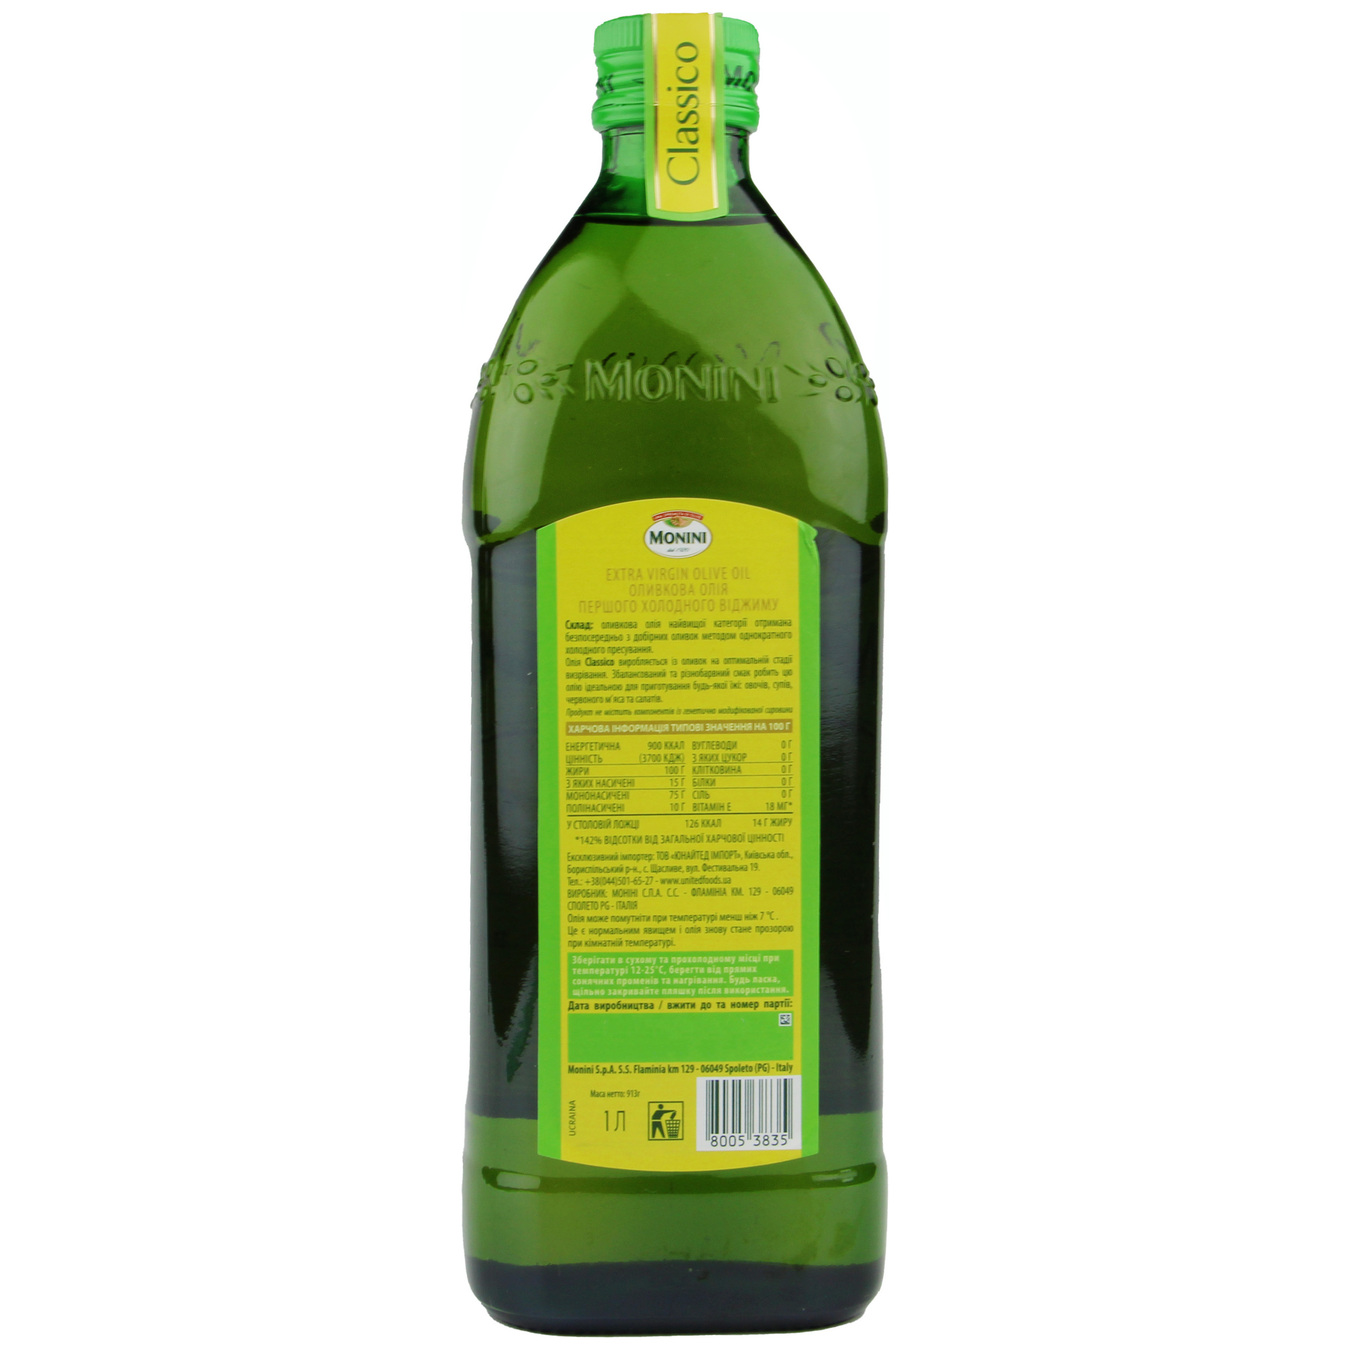 Monini Classico Extra Virgin Olive Oil 1l glass 2